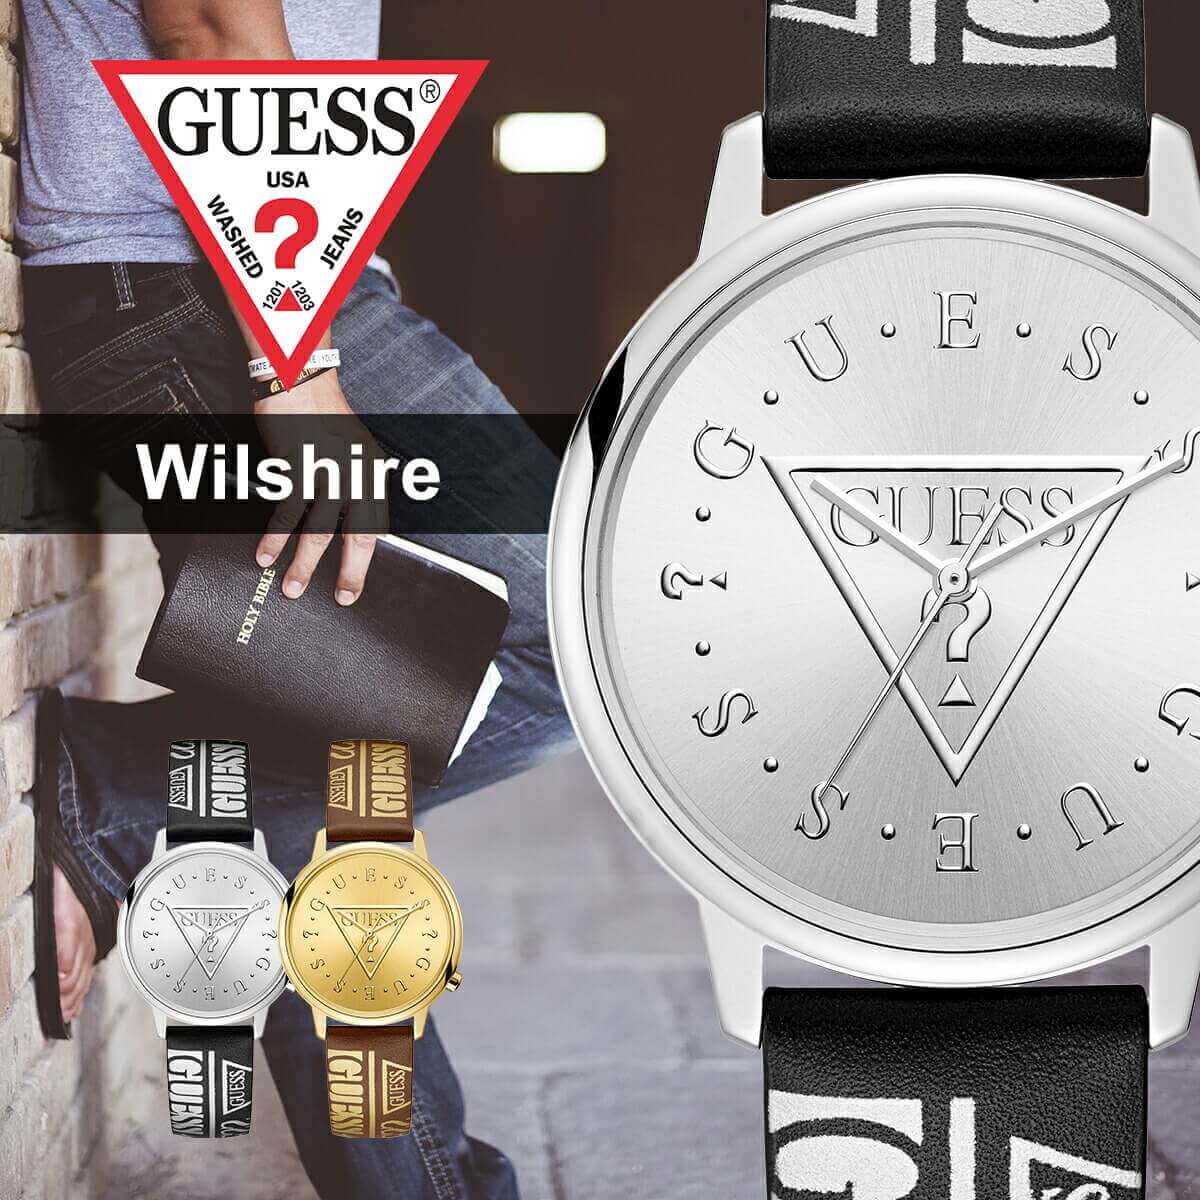 【楽天市場】ゲス 腕時計 GUESS 時計 ウィルシャー Wilshire ユニセックス メンズ レディース 正規品 人気 ストリート